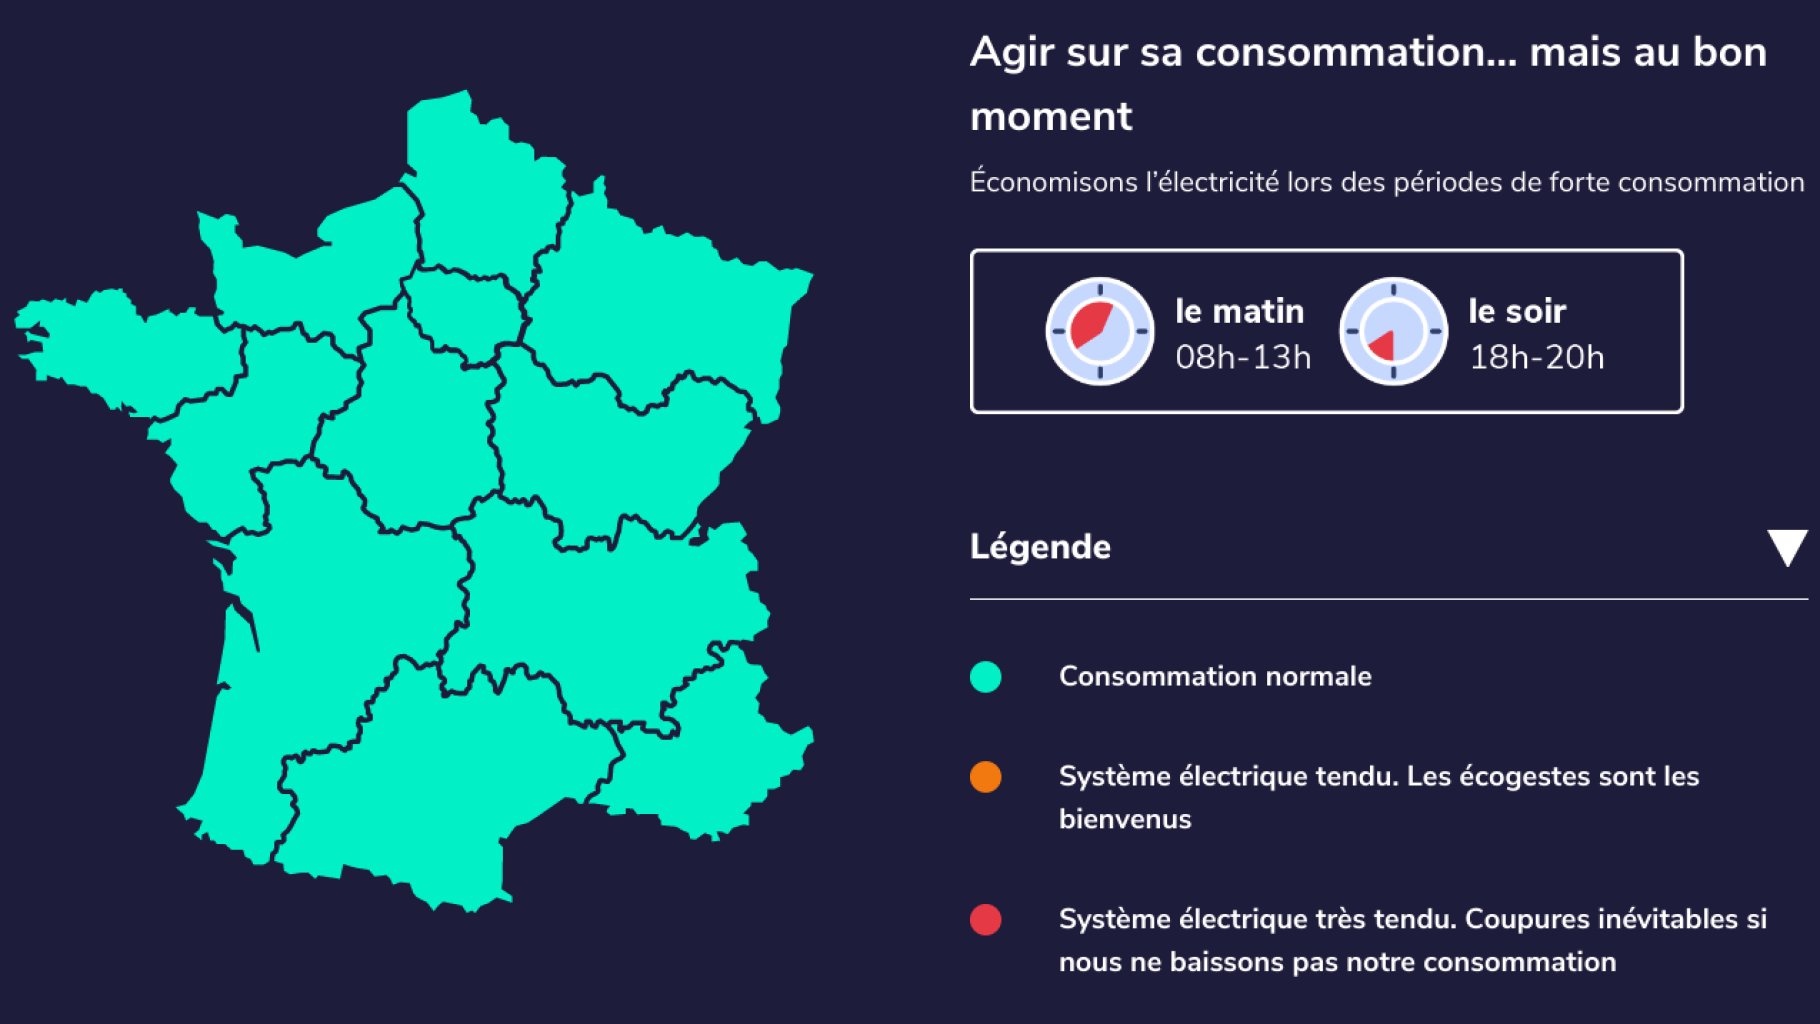 Het weerbericht voor elektriciteit wordt binnenkort uitgezonden op France Télévisions